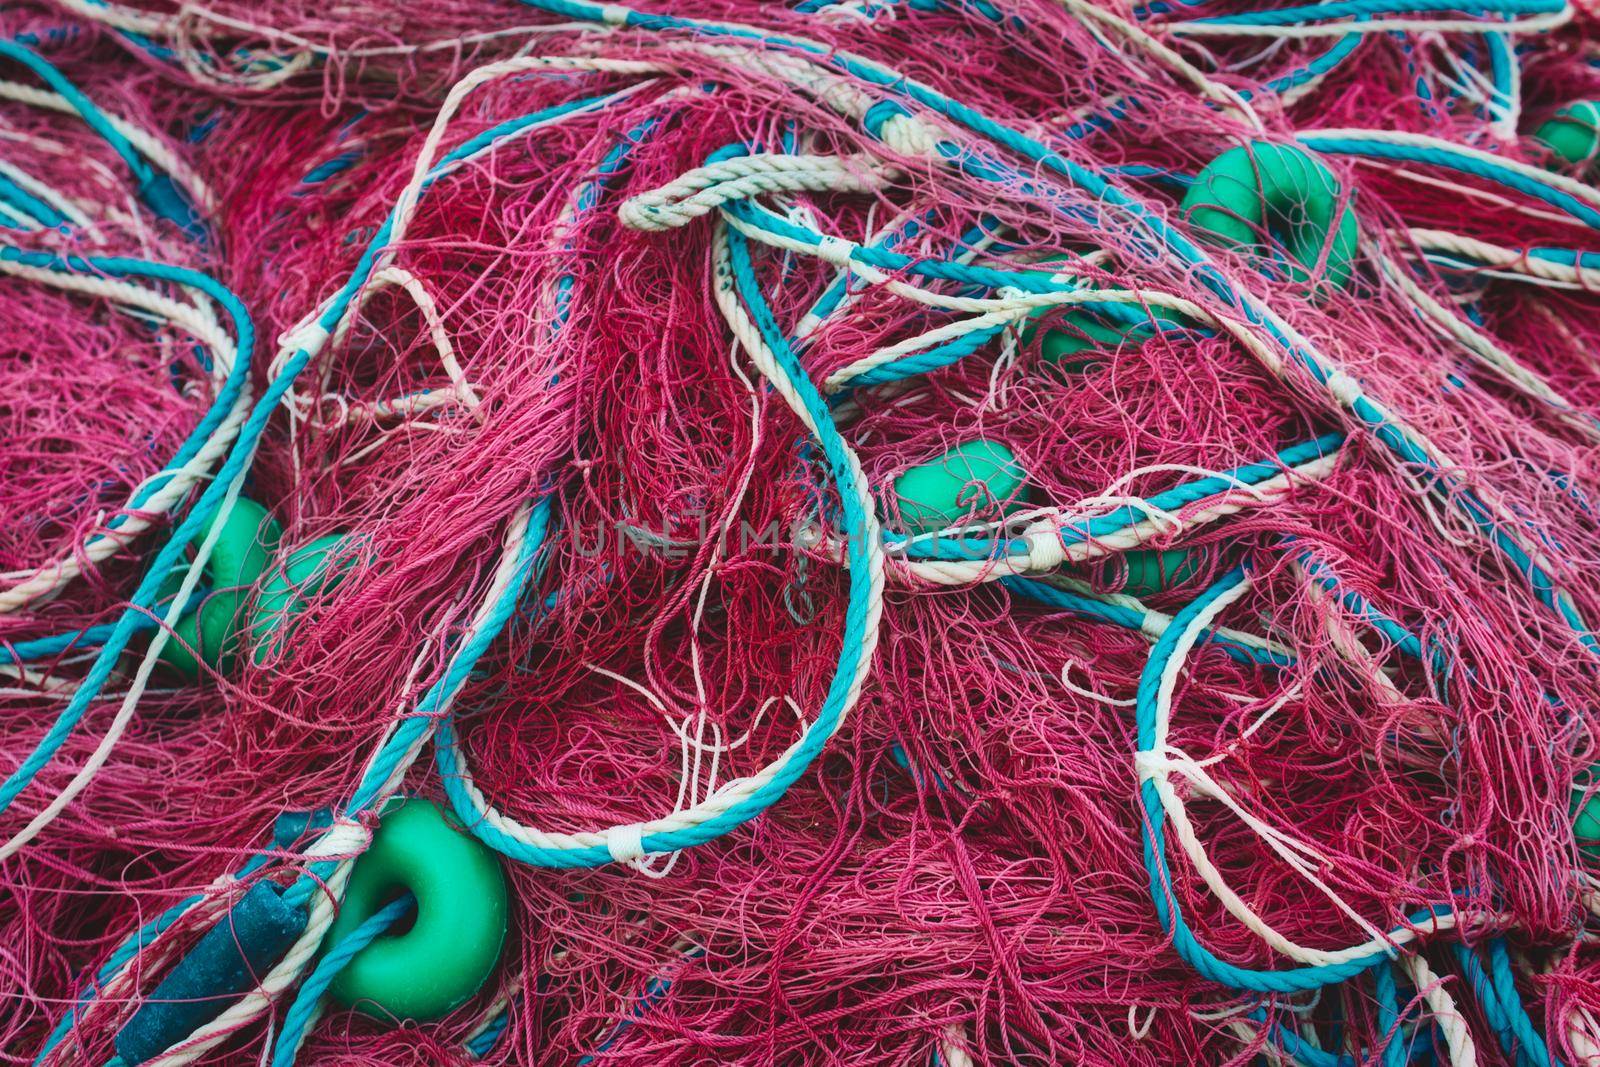 Full-frame background texture of fishermen's nets tangled